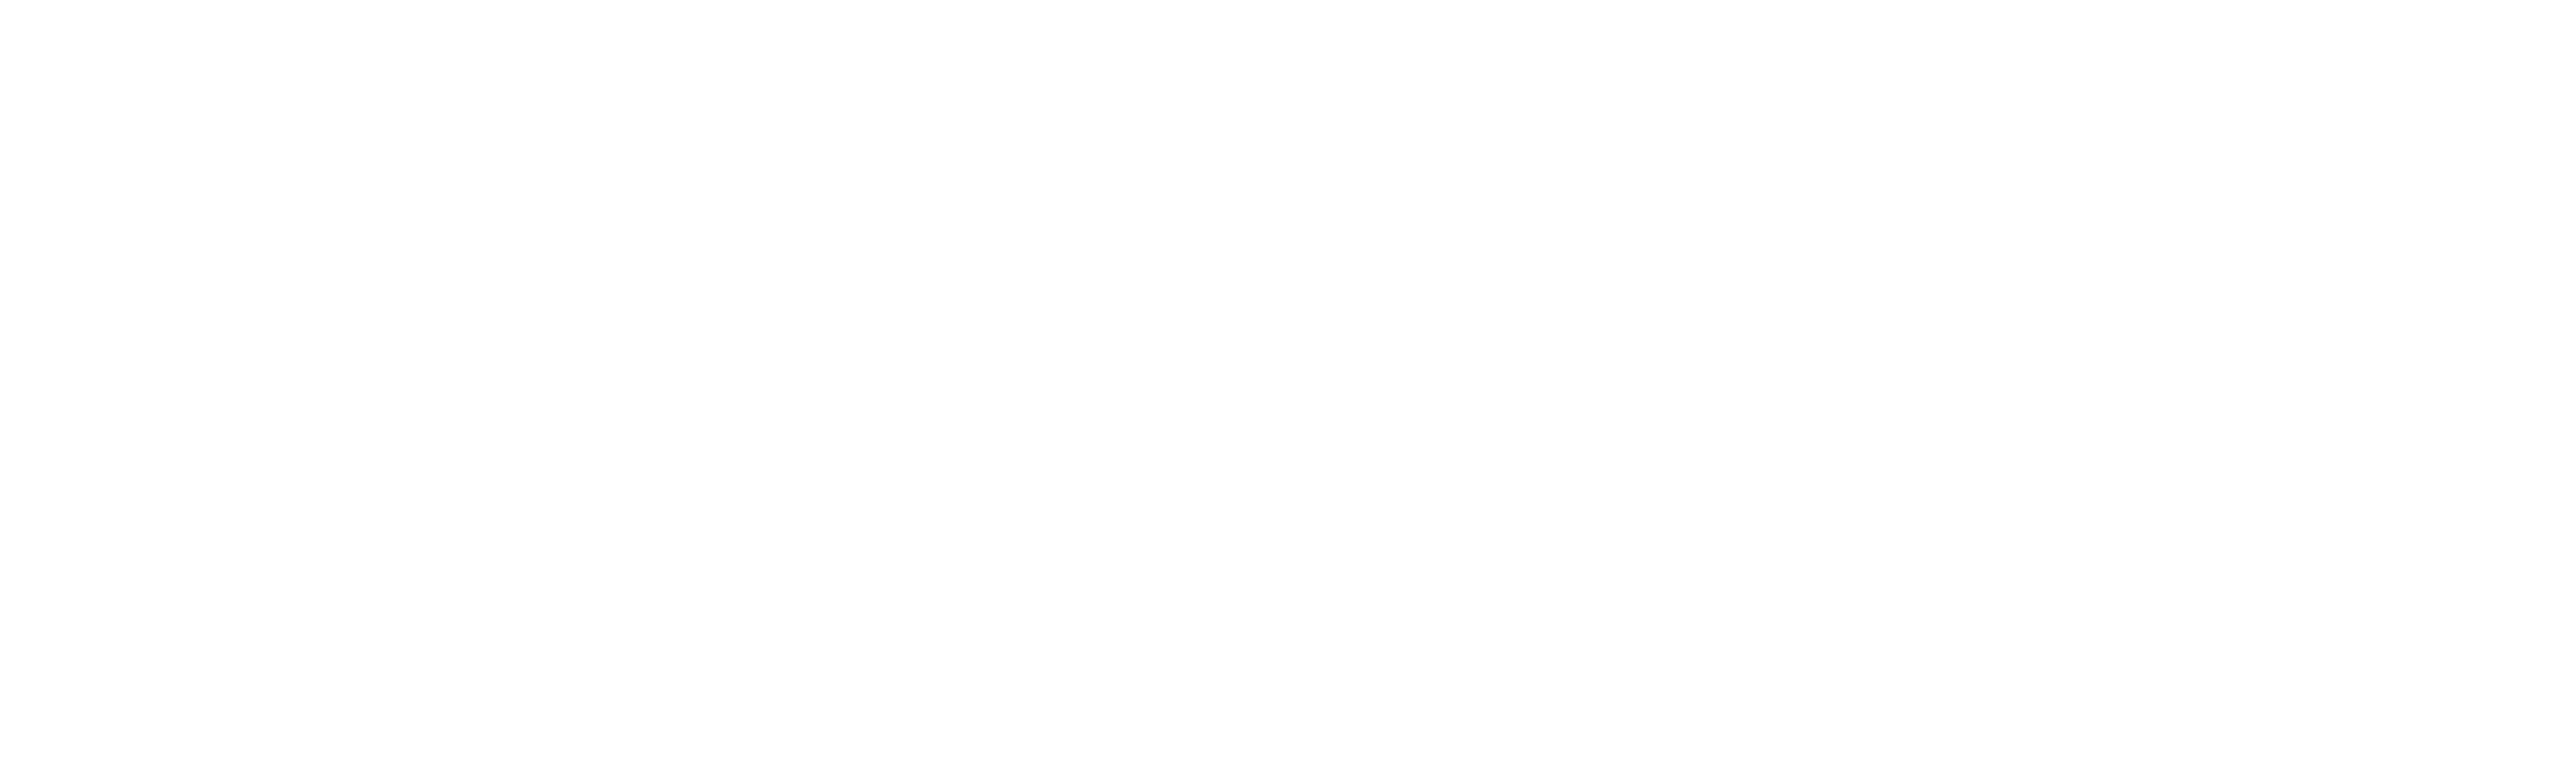 Sanitär Schneider München-Trudering, Sanitärbetrieb München, Minibaggerarbeiten München, Sanitär München, Heizung München